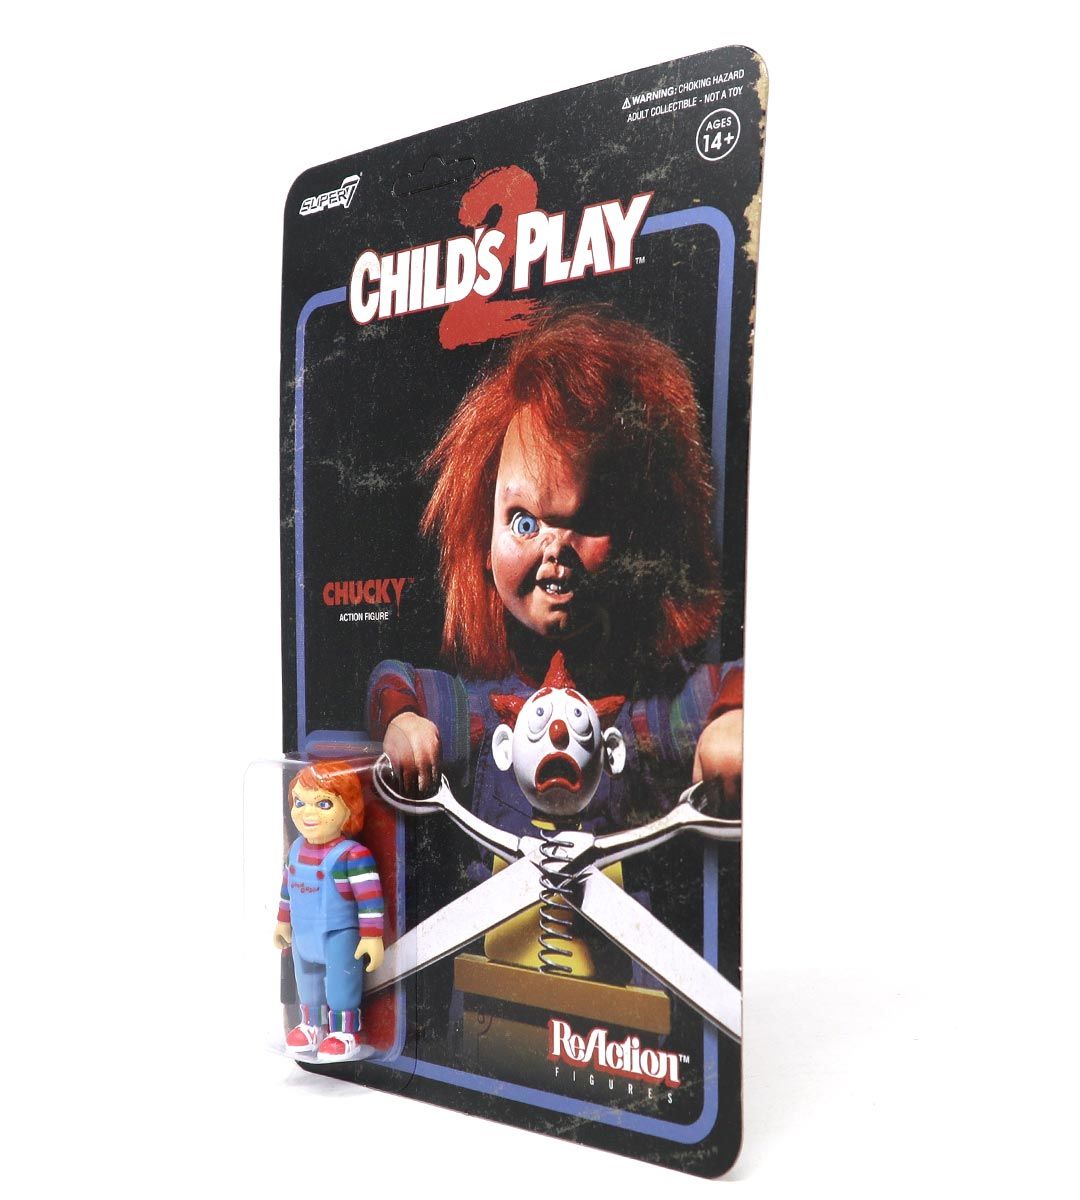 Chucky - ReAction figure